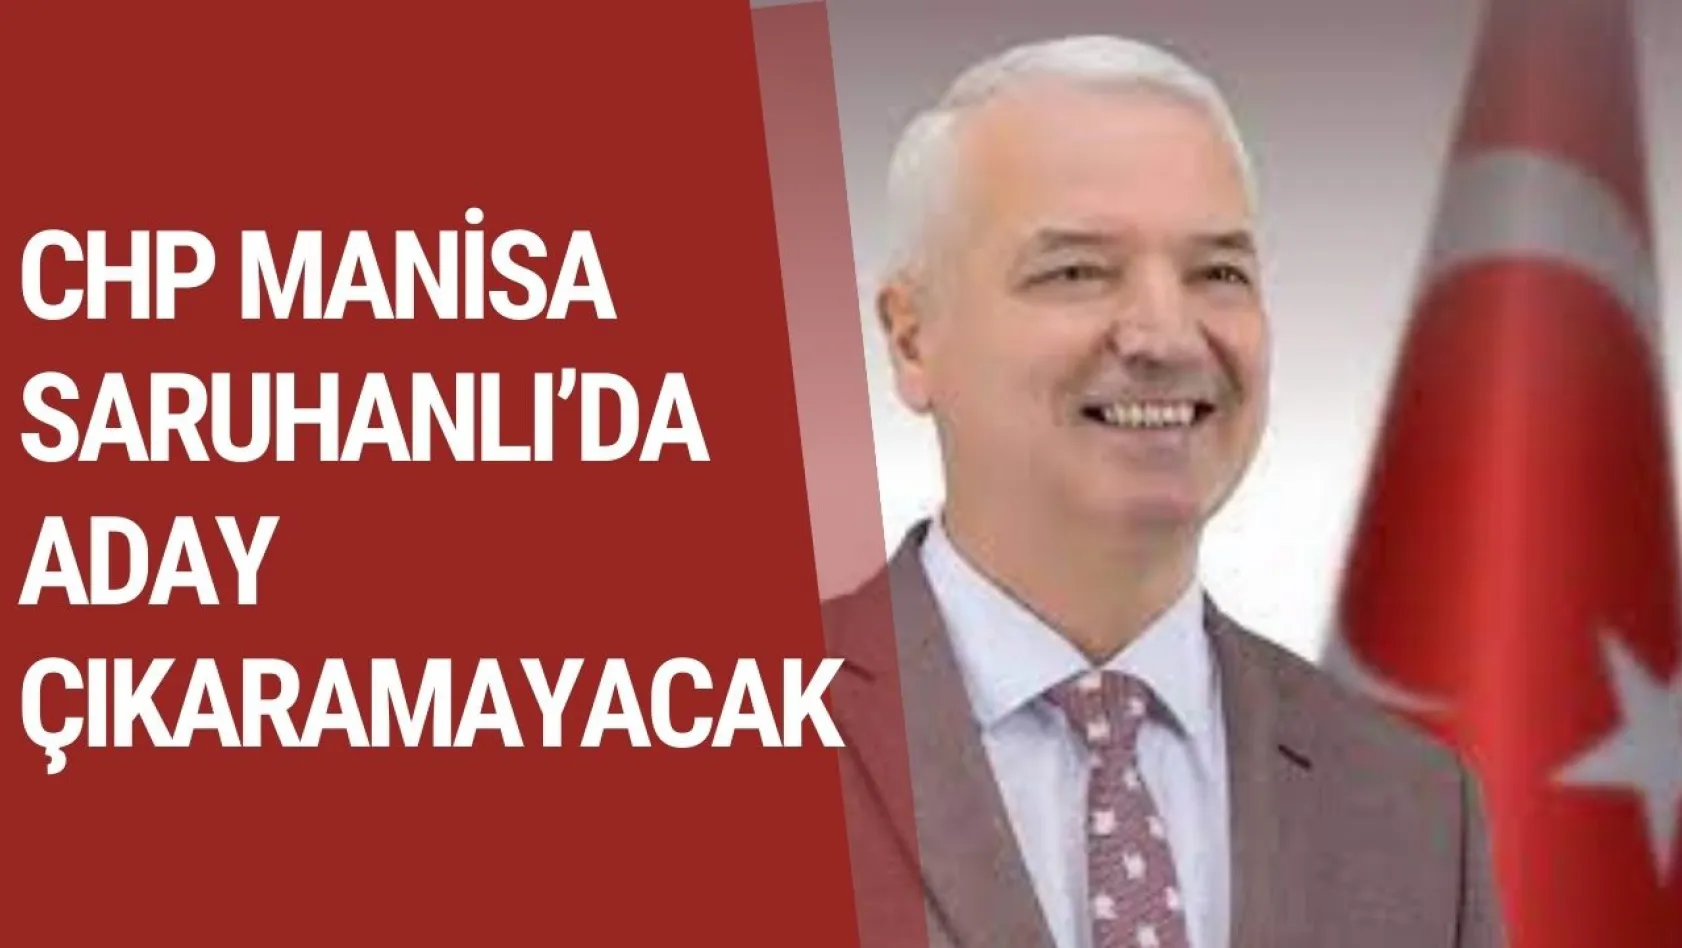 CHP Genel Başkanı Özgür Özel'e bir şok daha: CHP Manisa Saruhanlı'da aday çıkaramayacak